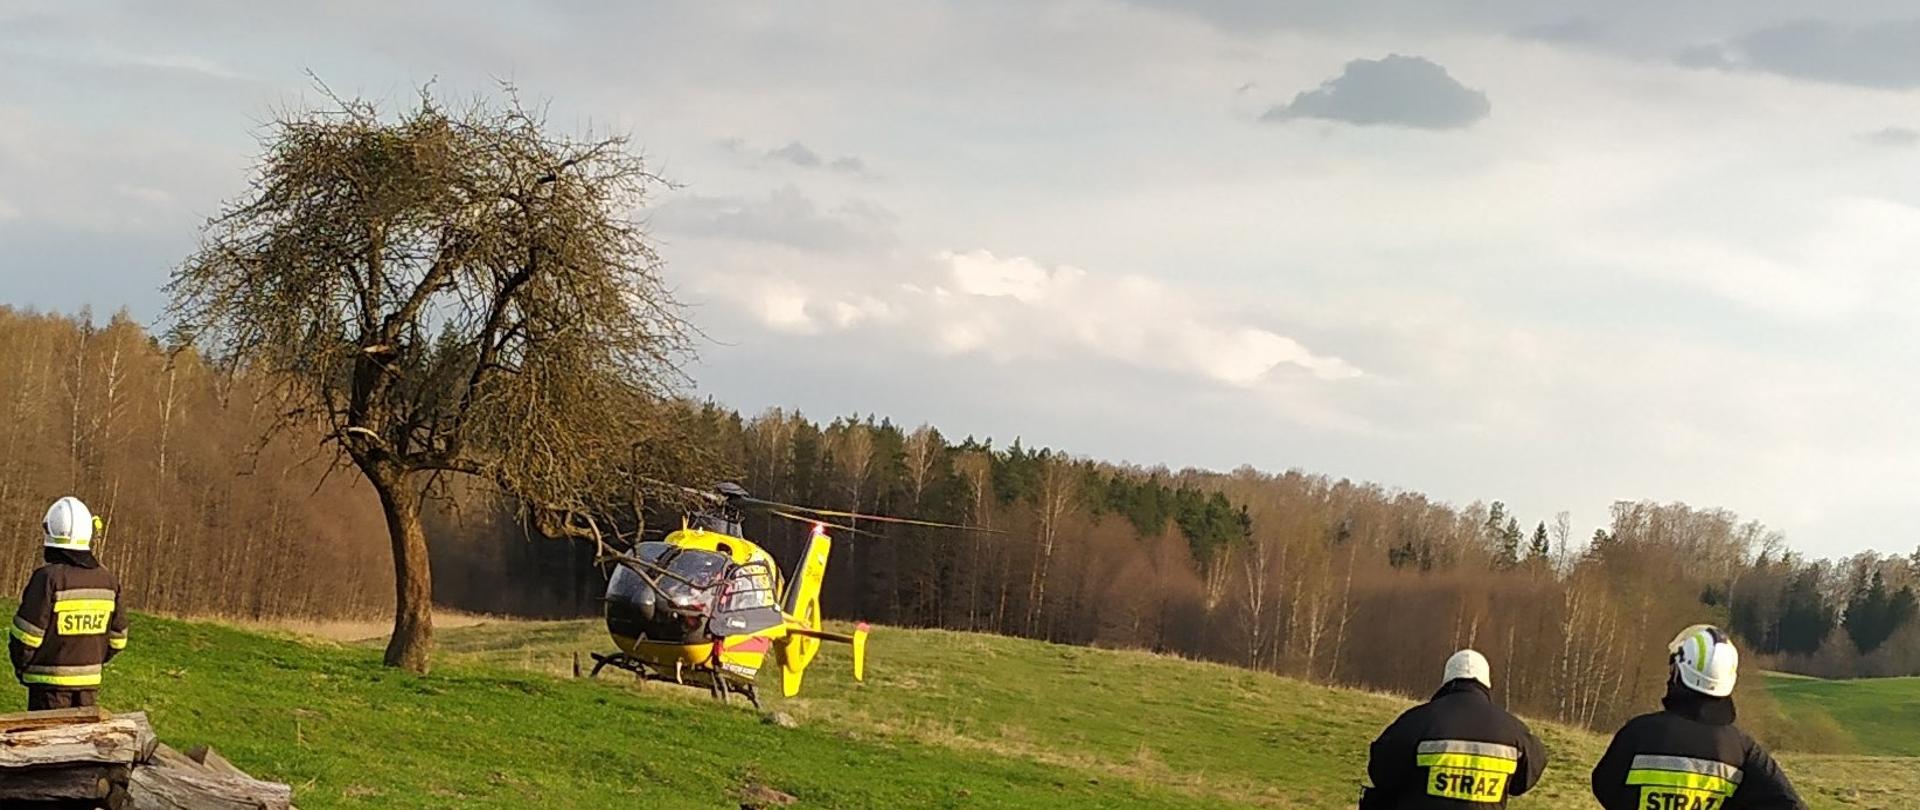 Zdjęcie przedstawia śmigłowiec Lotniczego Pogotowia Ratunkowego, którym osoba poszkodowana przygnieciona przez ciągnik rolniczy, została przetransportowana do szpitala